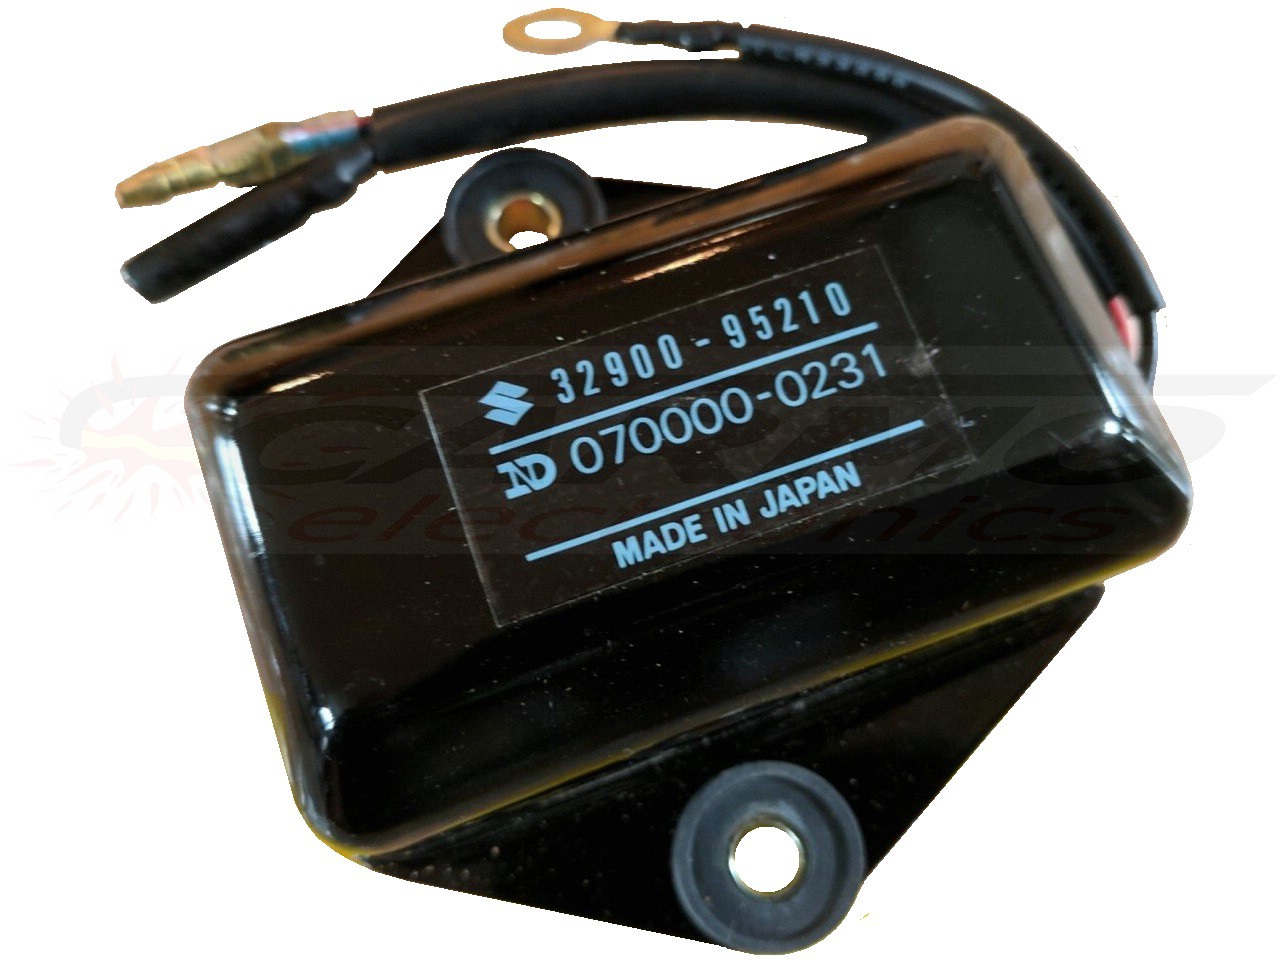 DT20 - DT65 CDI Einheit Steuergerät Zündbox (32900-95210, 070000-0231)